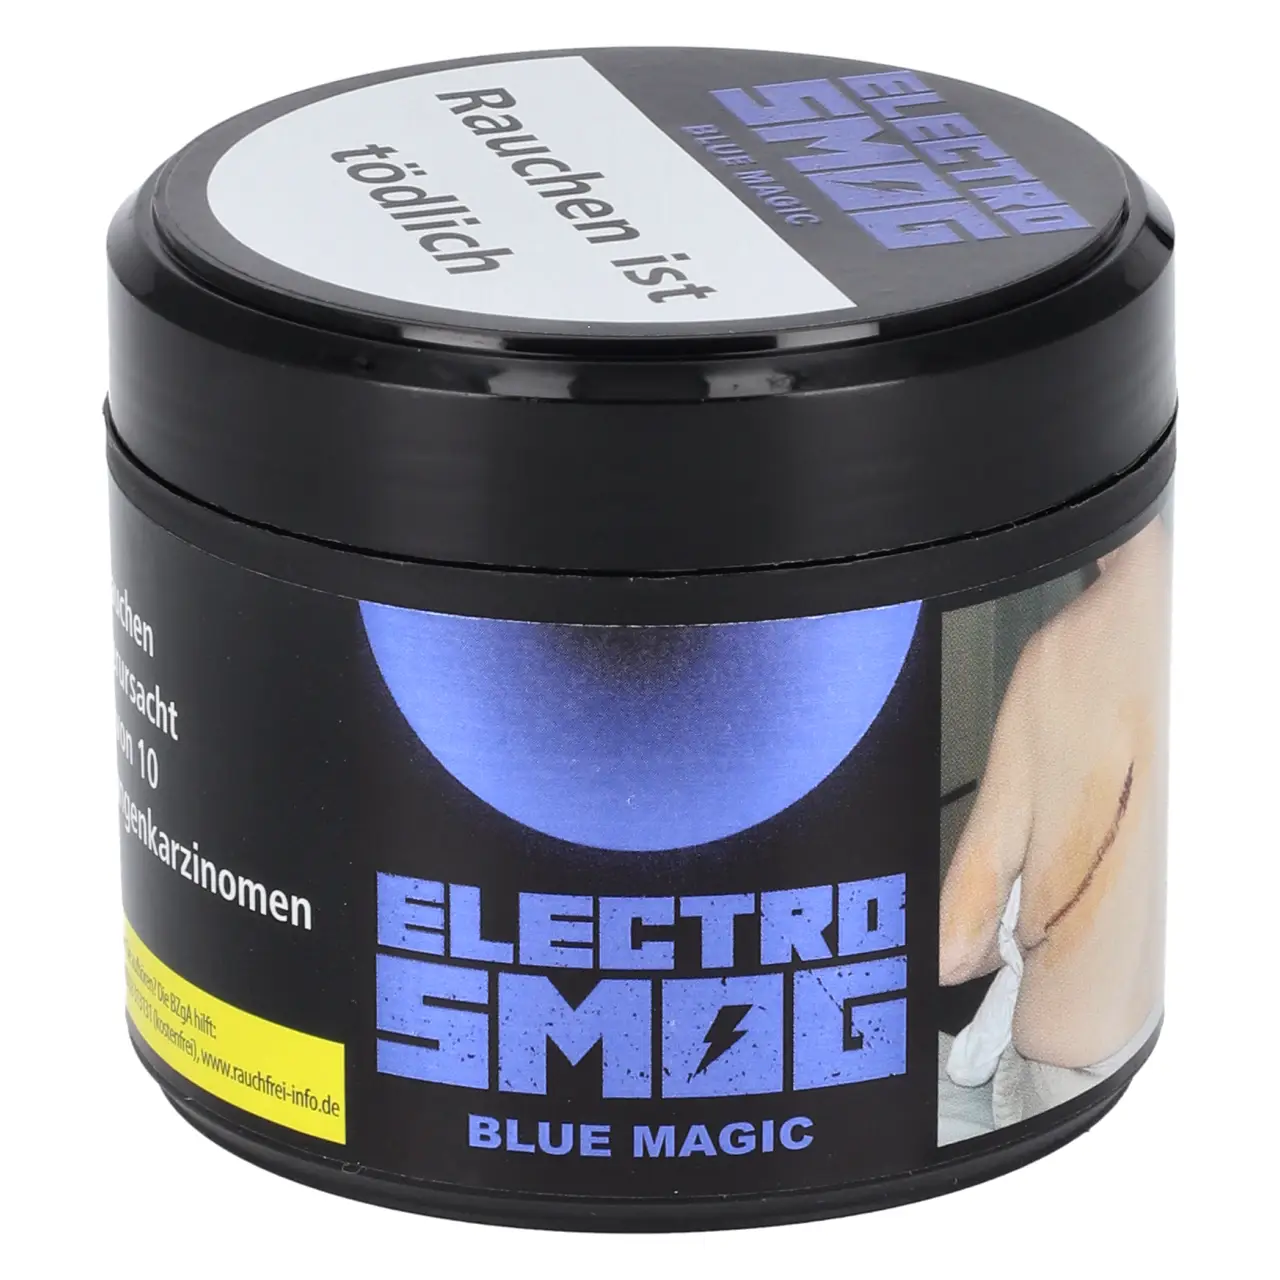 Electro Smog Blue Magic Shisha Tabak in der 200g Dose